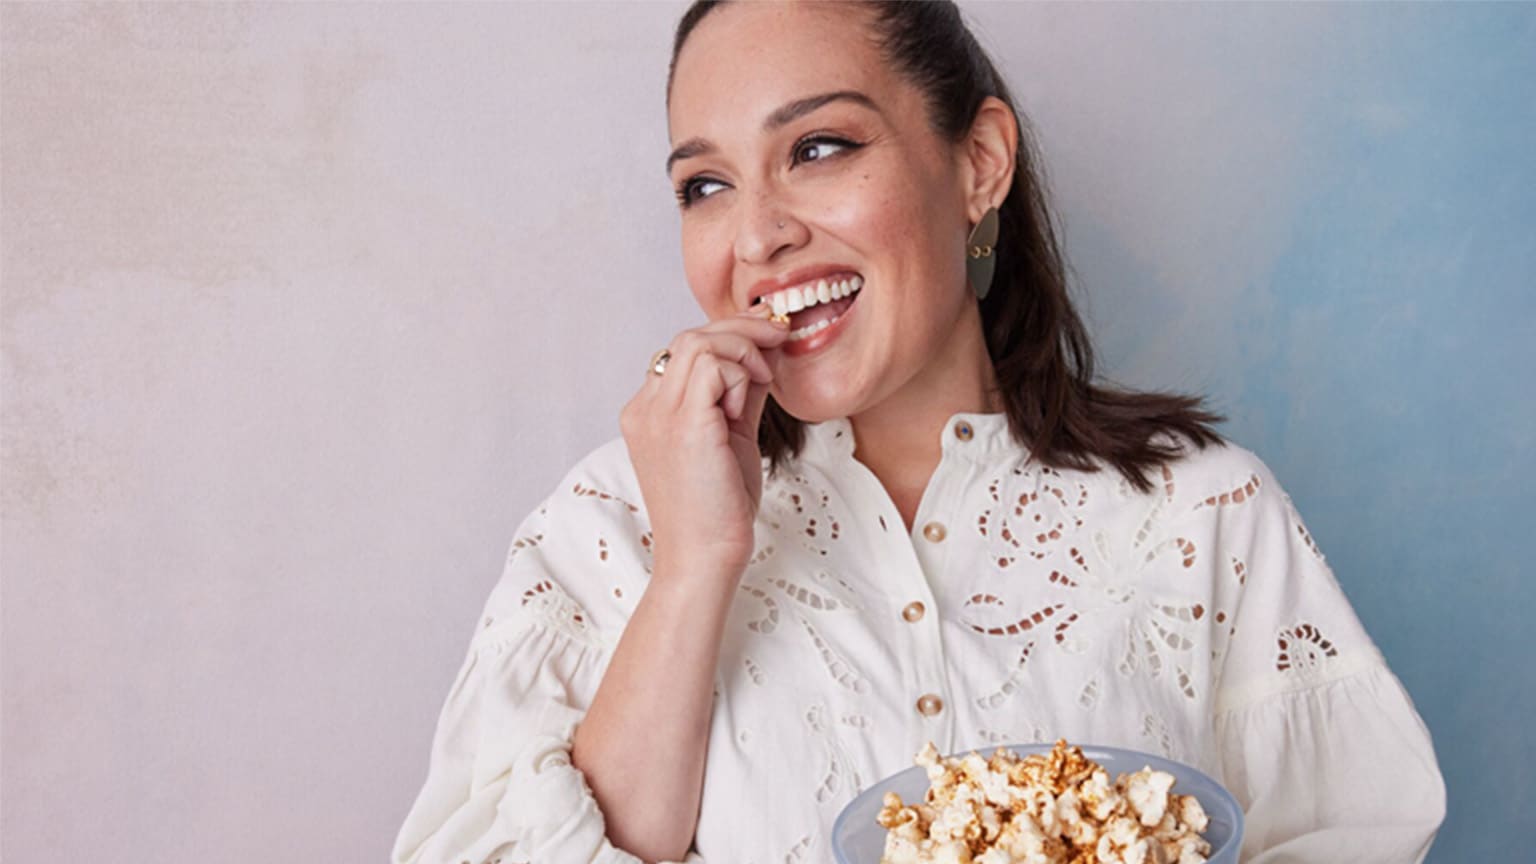 Junge Frau mit braunen Haaren in weißer Bluse isst Popcorn